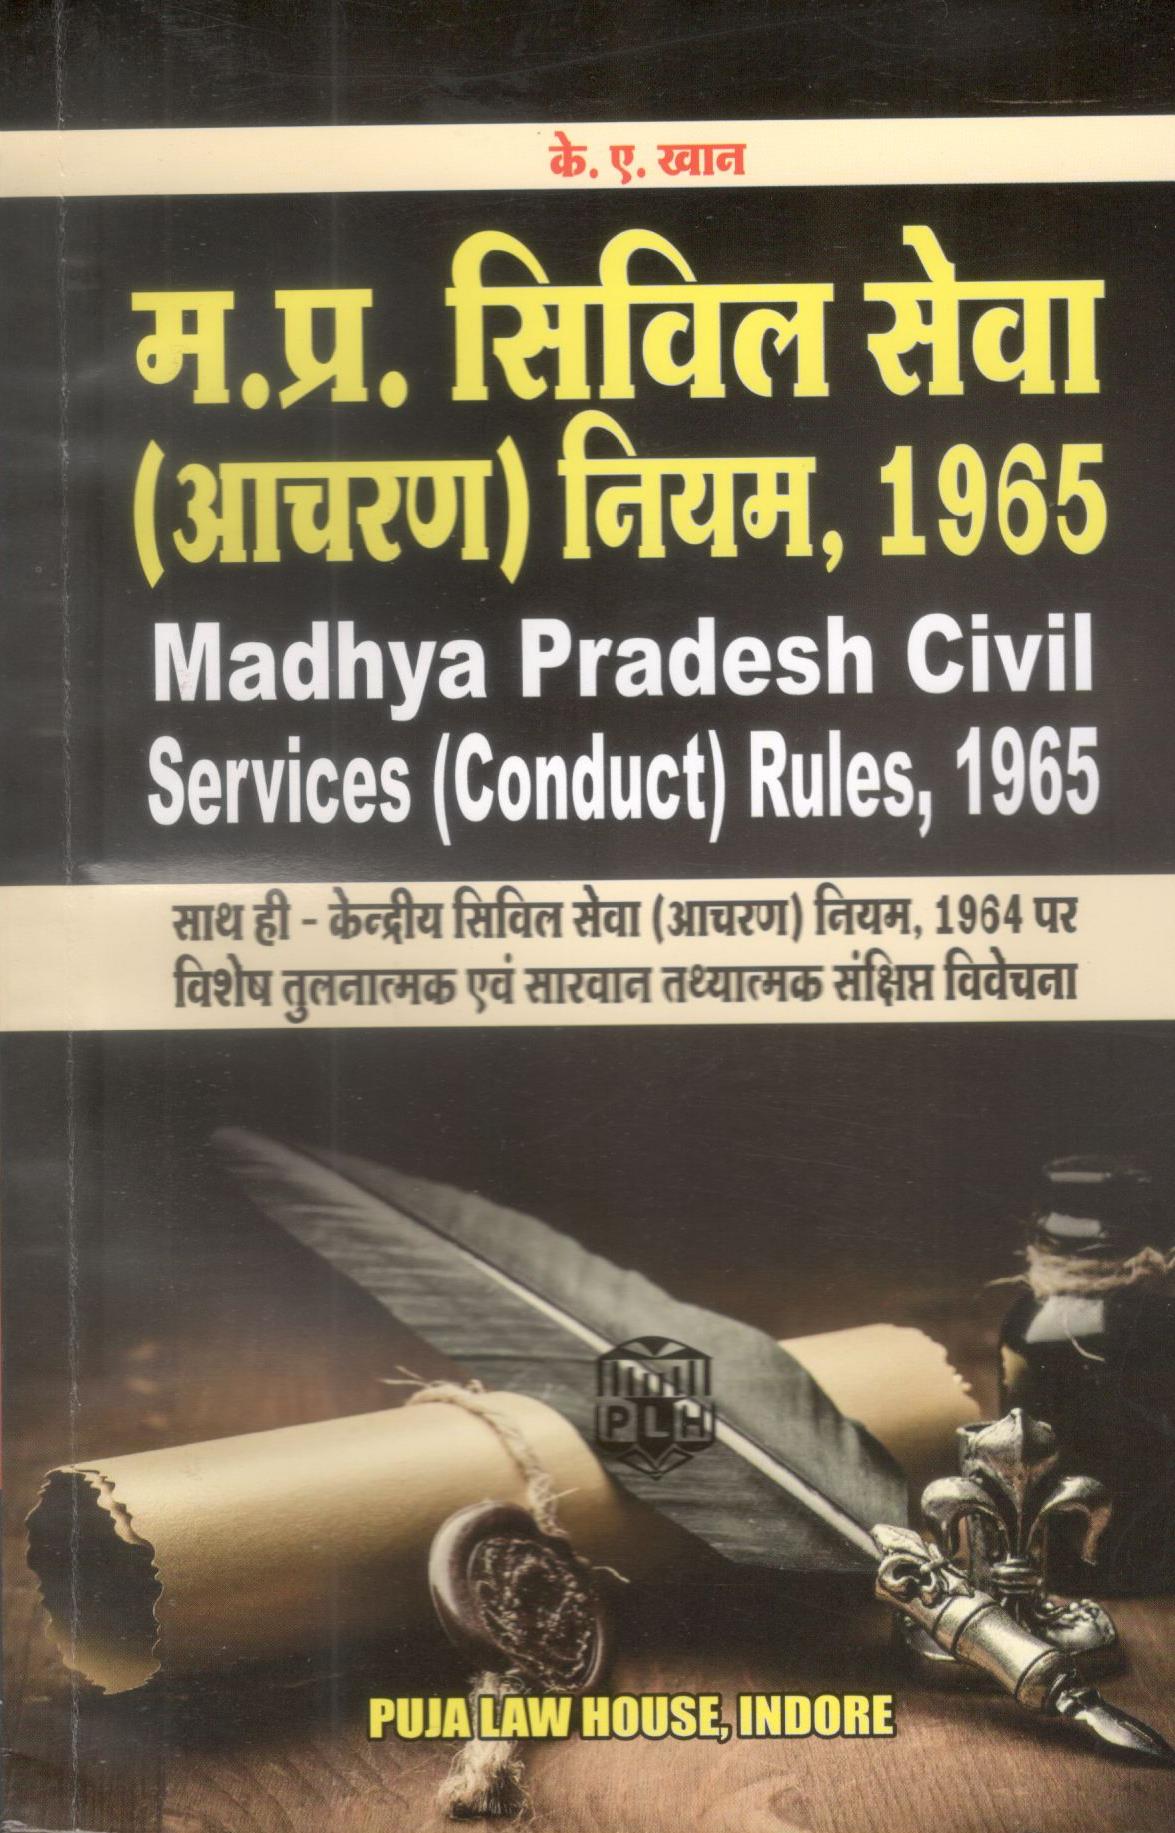 The Madhya Pradesh Civil Services (Conduct)  Rules, 1965 / शंकरलाल सोनी |  के.ए. खान – मध्य प्रदेश सिविल सेवा (आचरण) नियम, 1965 साथ ही केंद्रीय सिविल सेवा (आचरण) नियम, 1964 पर विशेष तुलनात्मक एवं सारवान तथयातमक एवं संक्षिप्त विवेचना